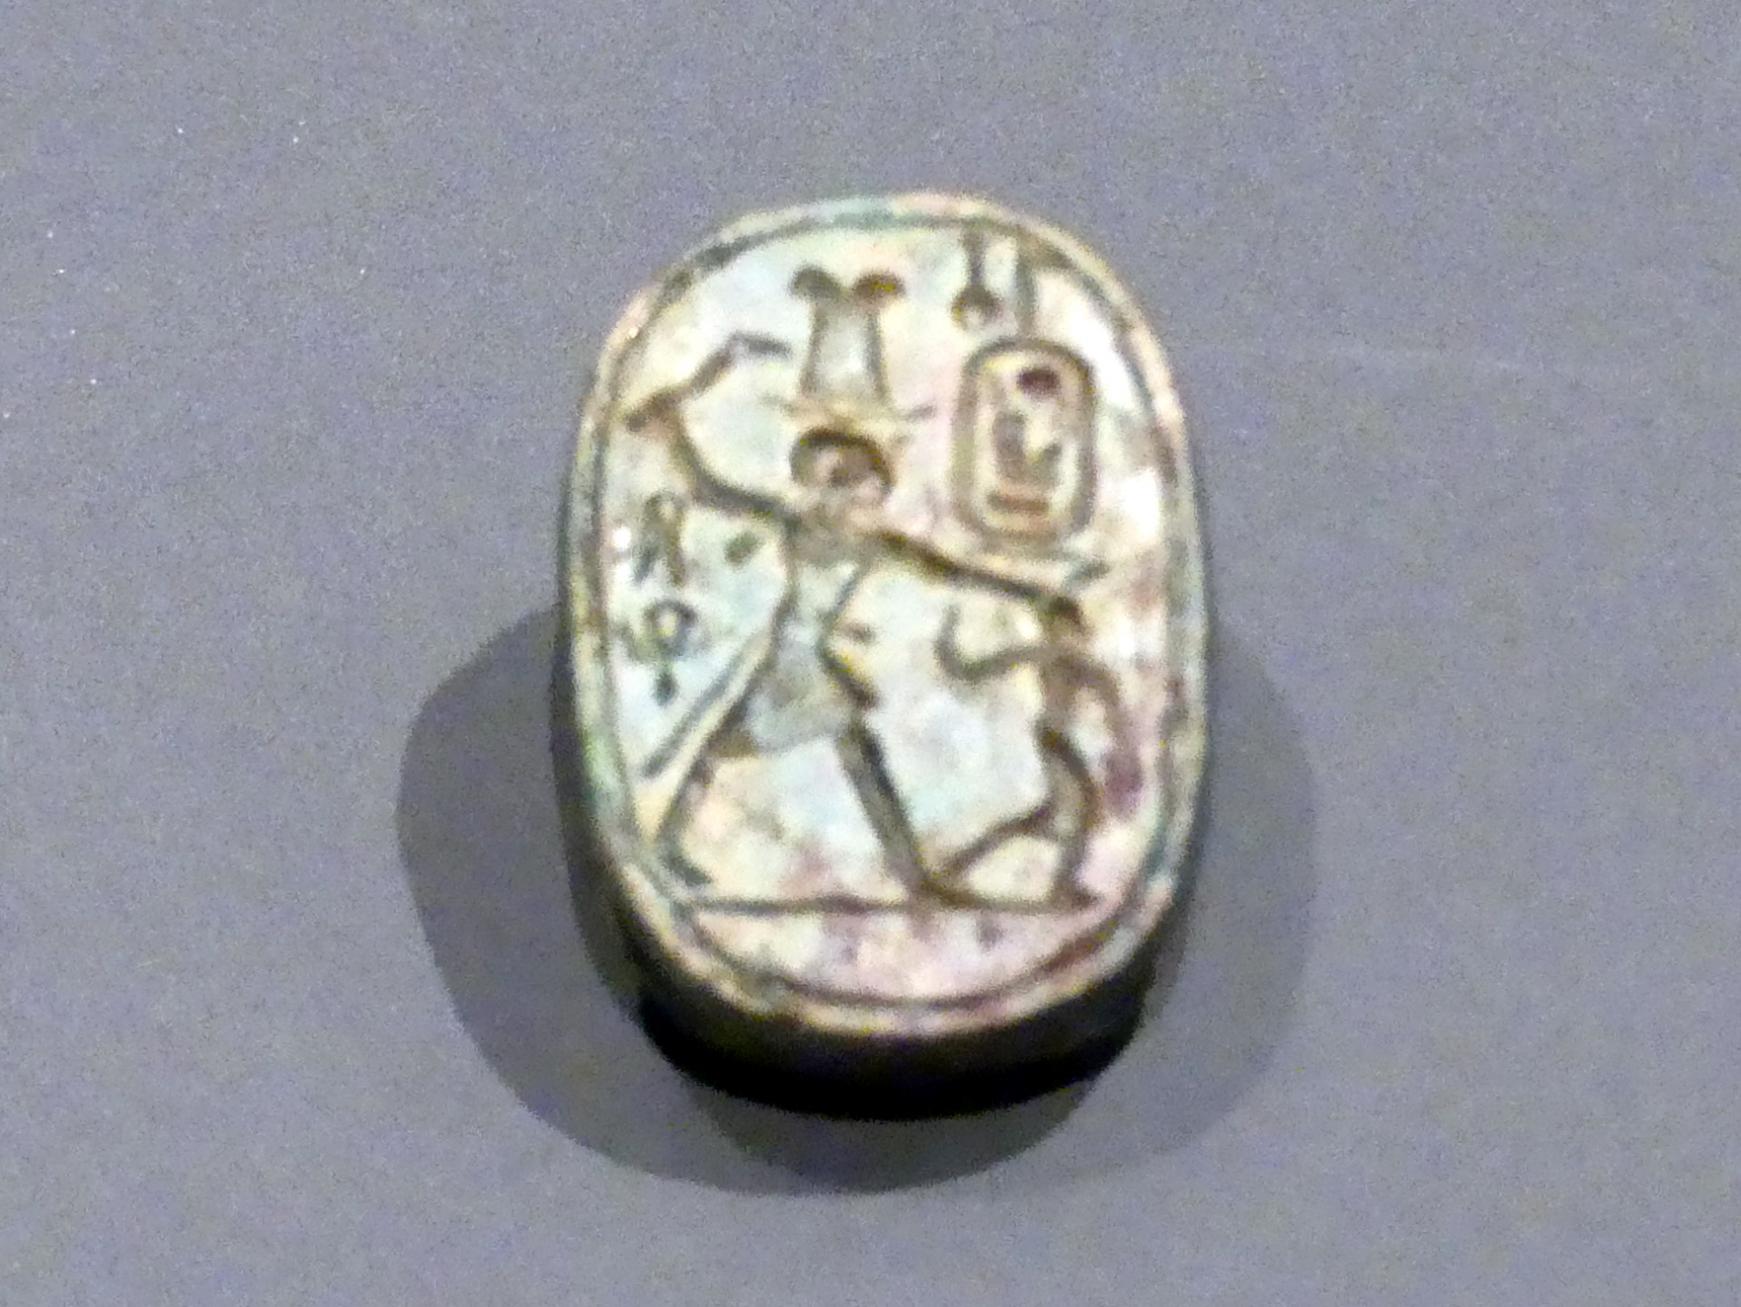 Skarabäus mit der Darstellung: Pharao Amenophis III. beim Erschlagen eines Feindes, 18. Dynastie, Undatiert, 1380 v. Chr.